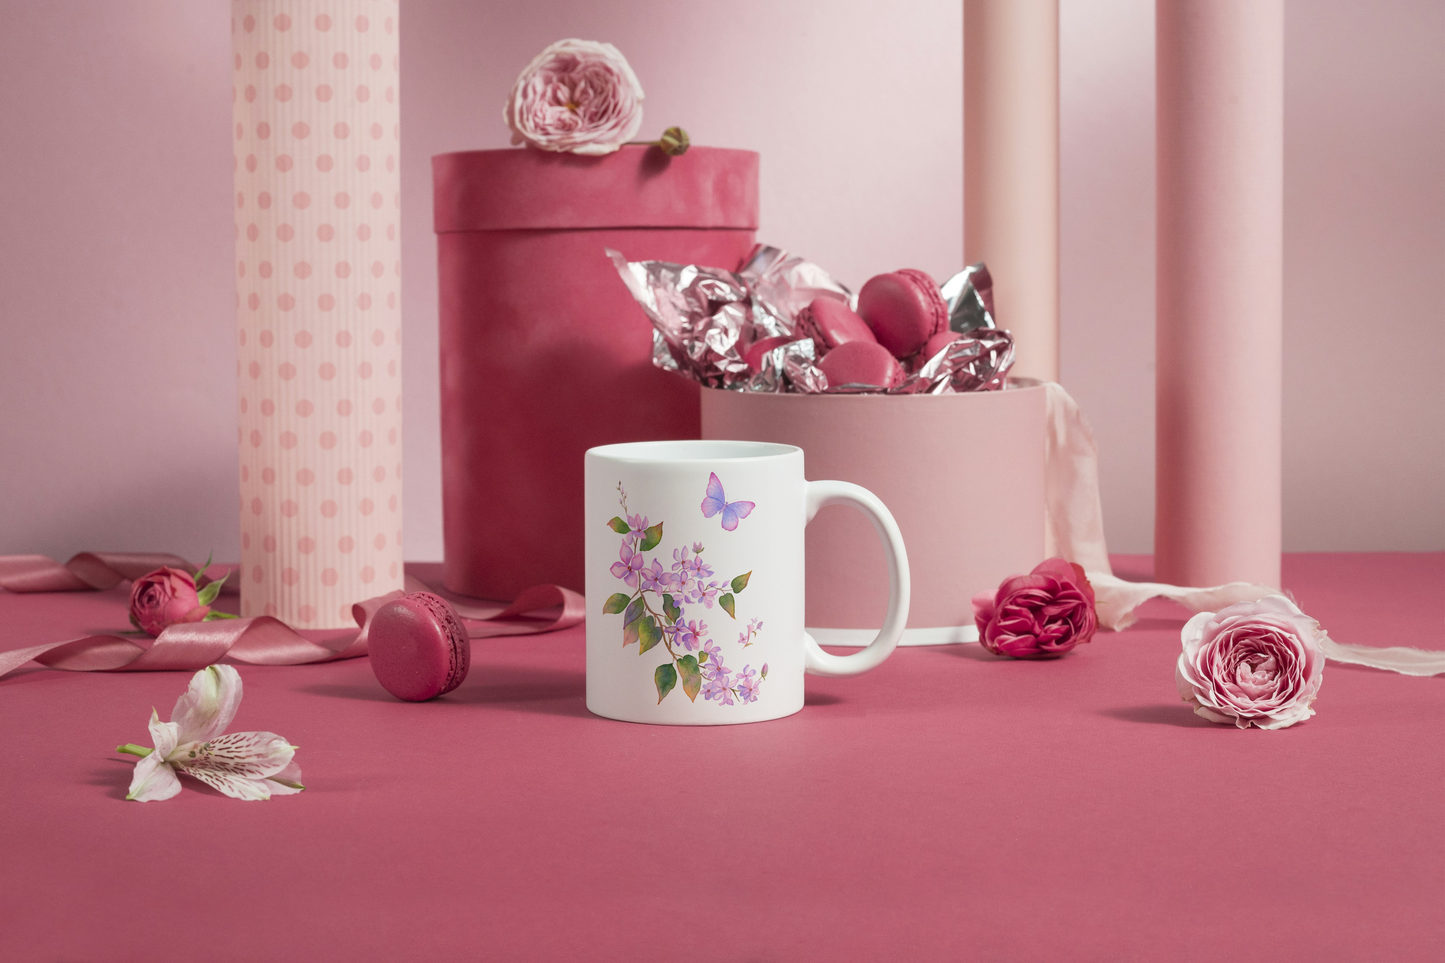 Mug/Tasse personnalisé avec prénom thème Lilas vintage / cadeau fête des mères  / Cadeau Personnalisé, cadeaux